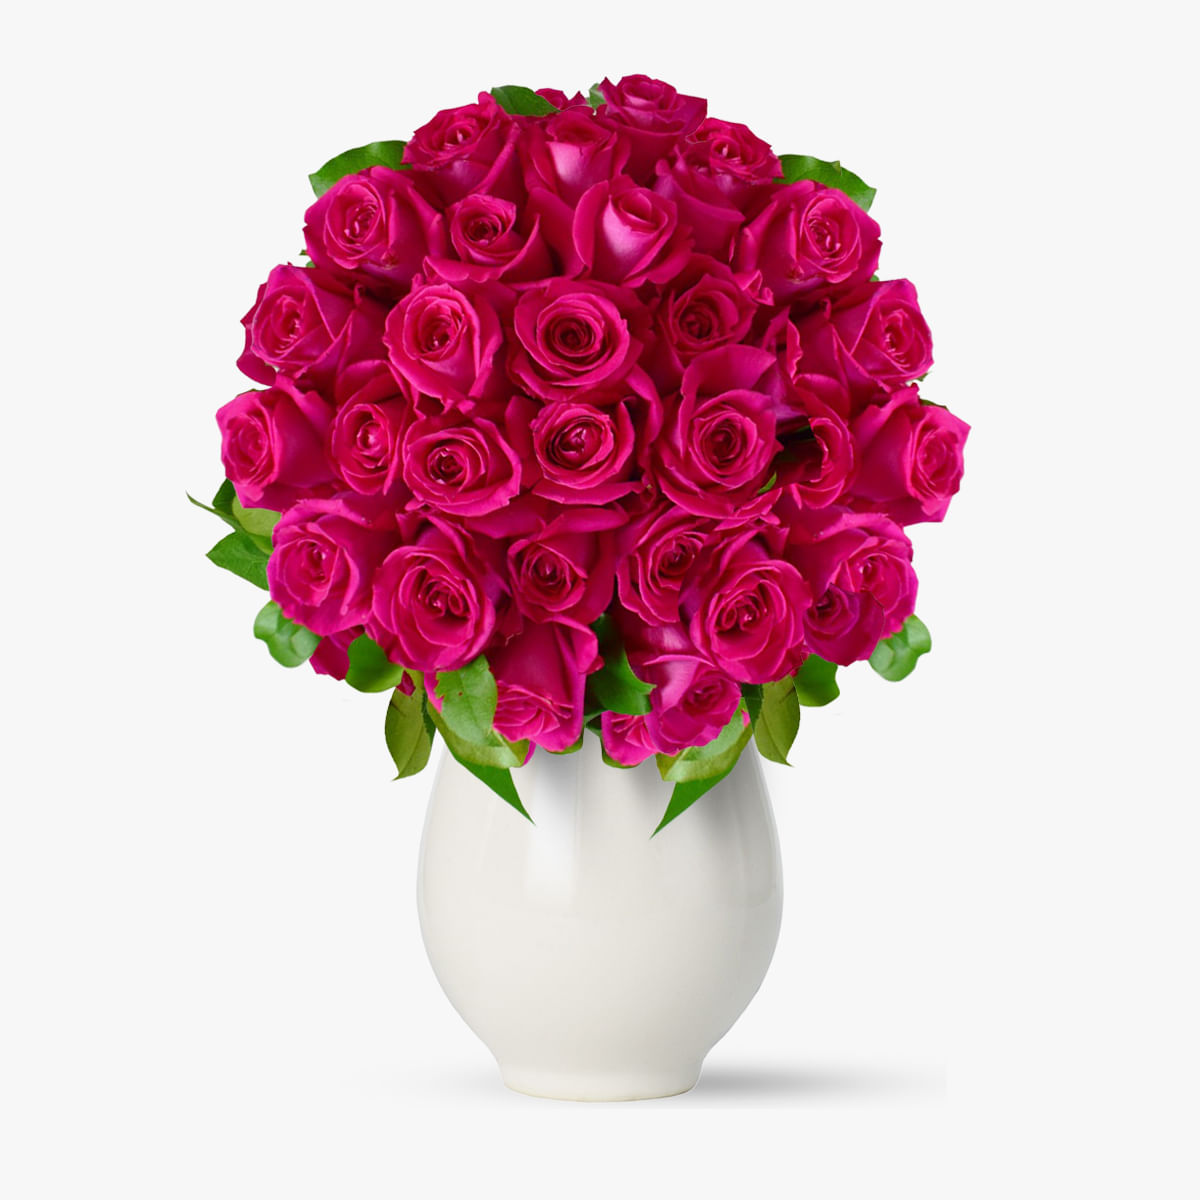 Buchet de 25 trandafiri roz Floria imagine 2022